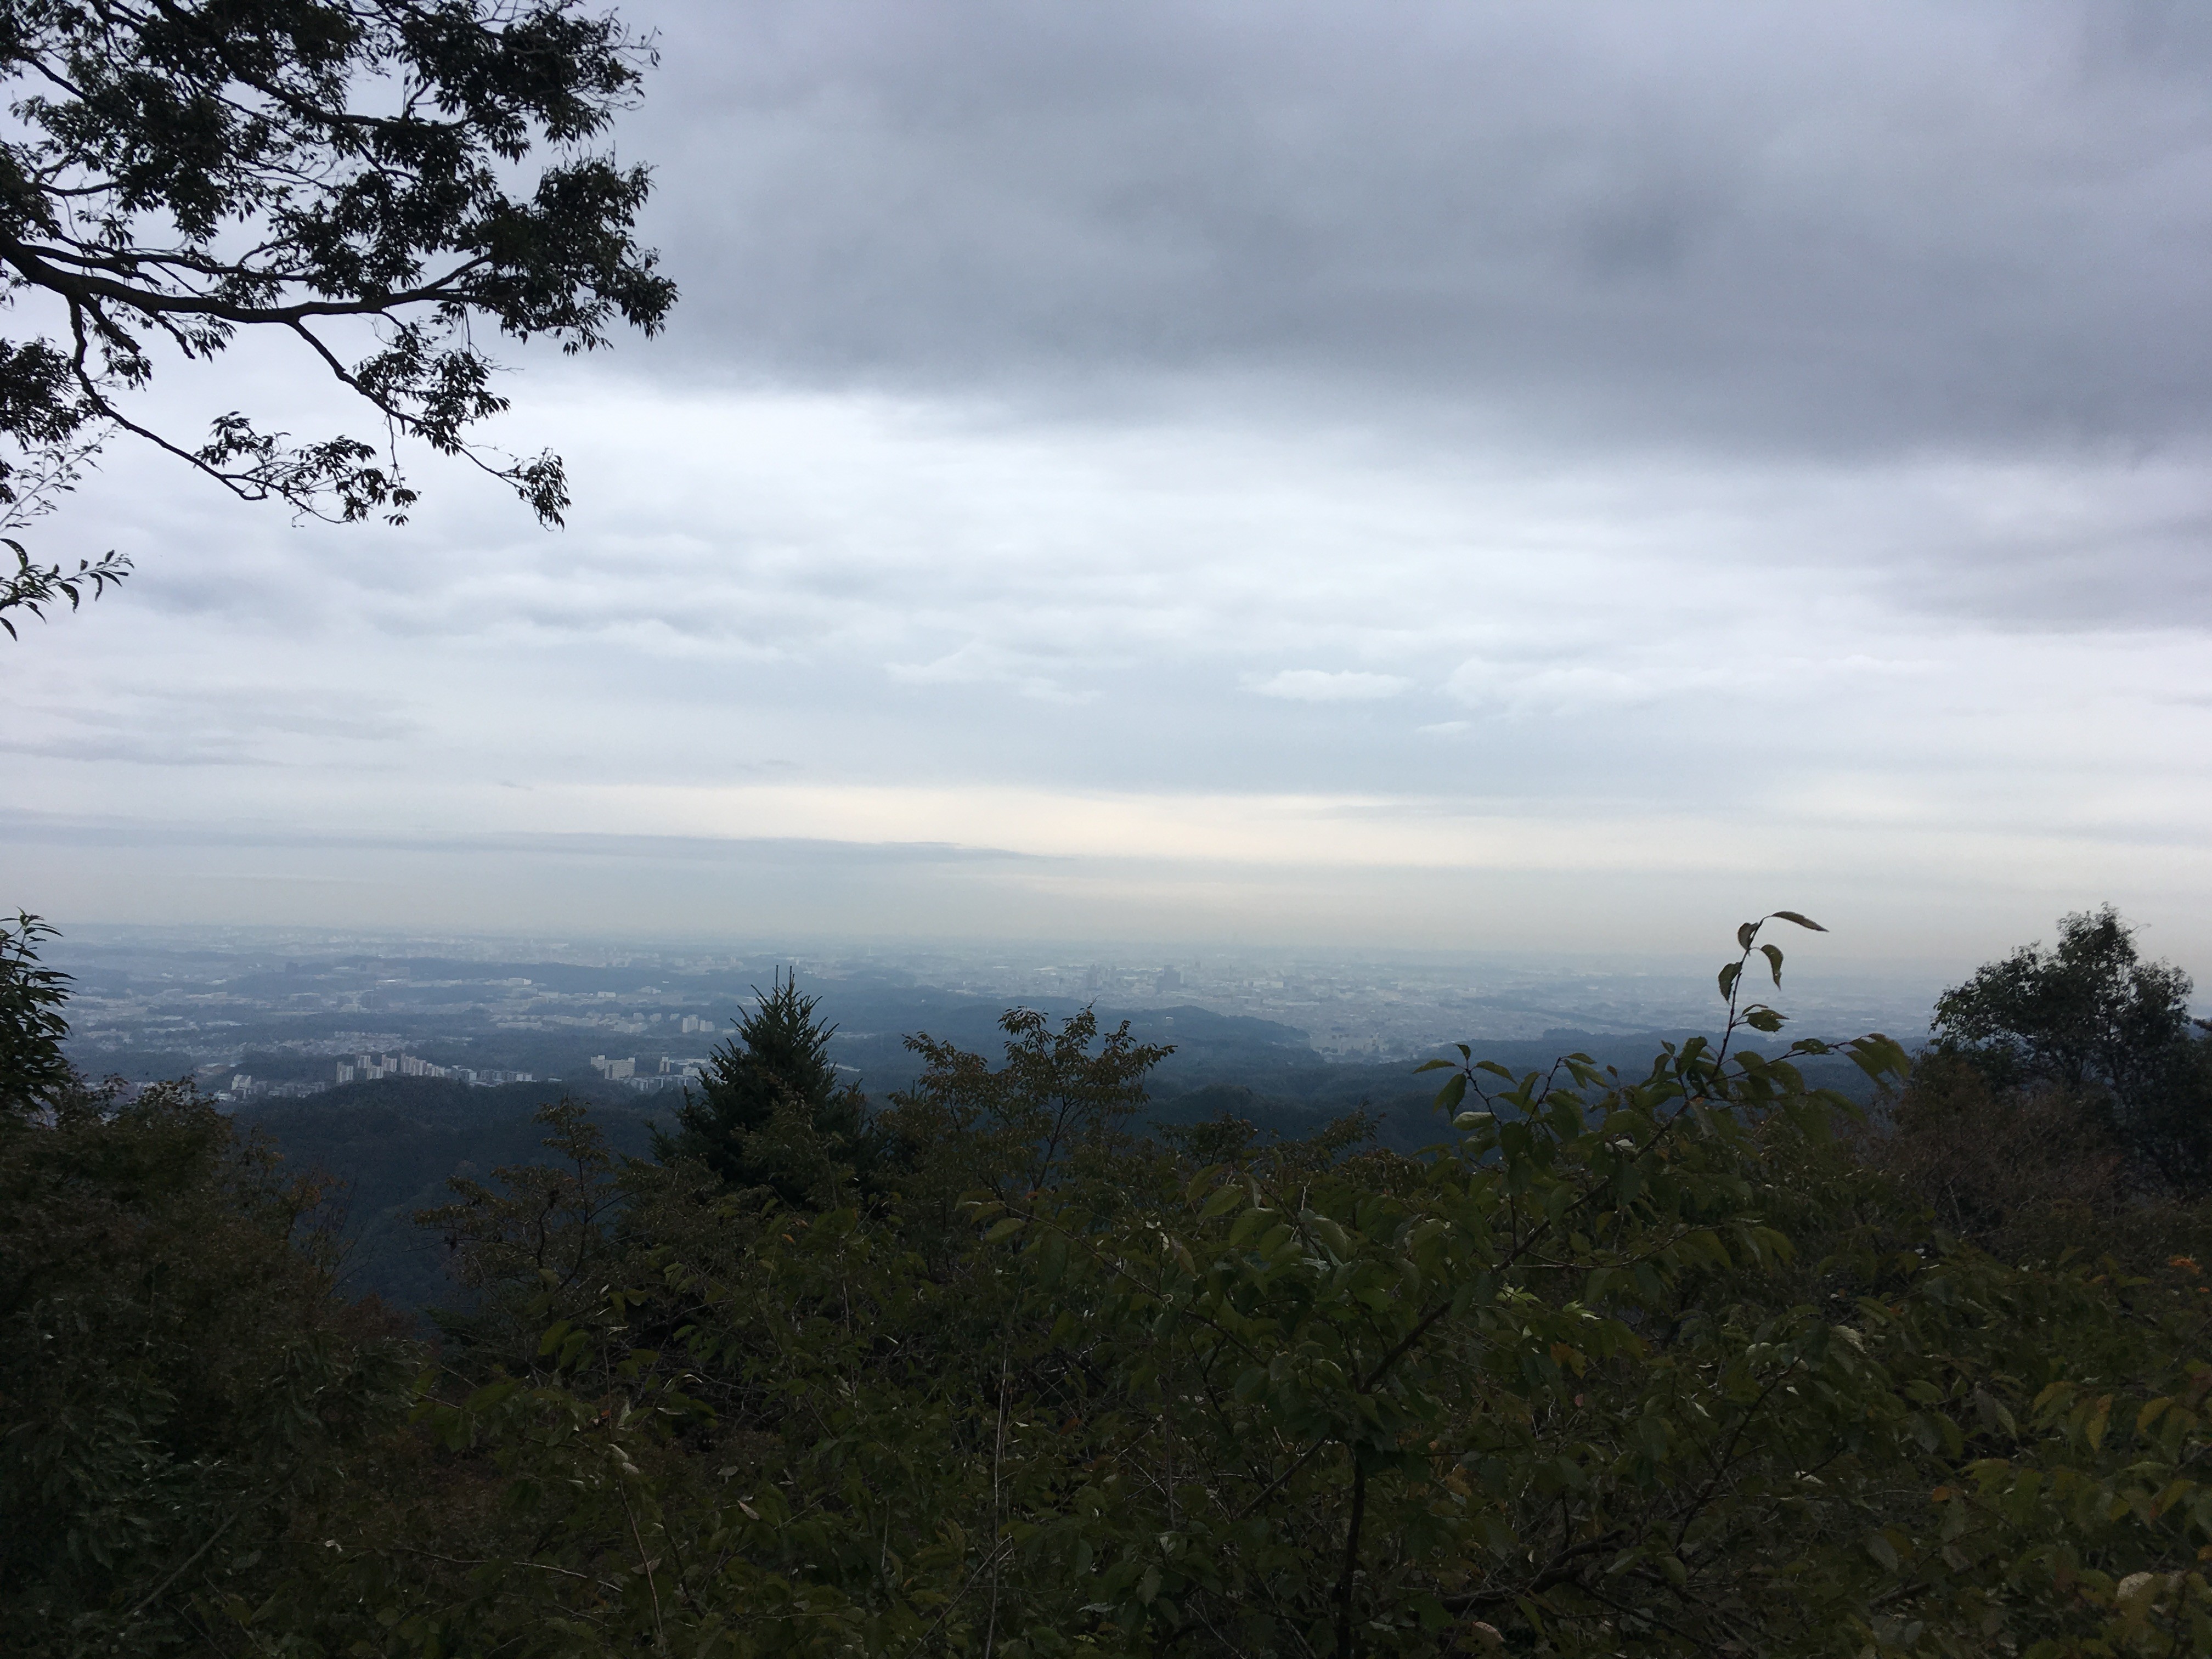 高尾山ケーブルカー駅展望台からの景観